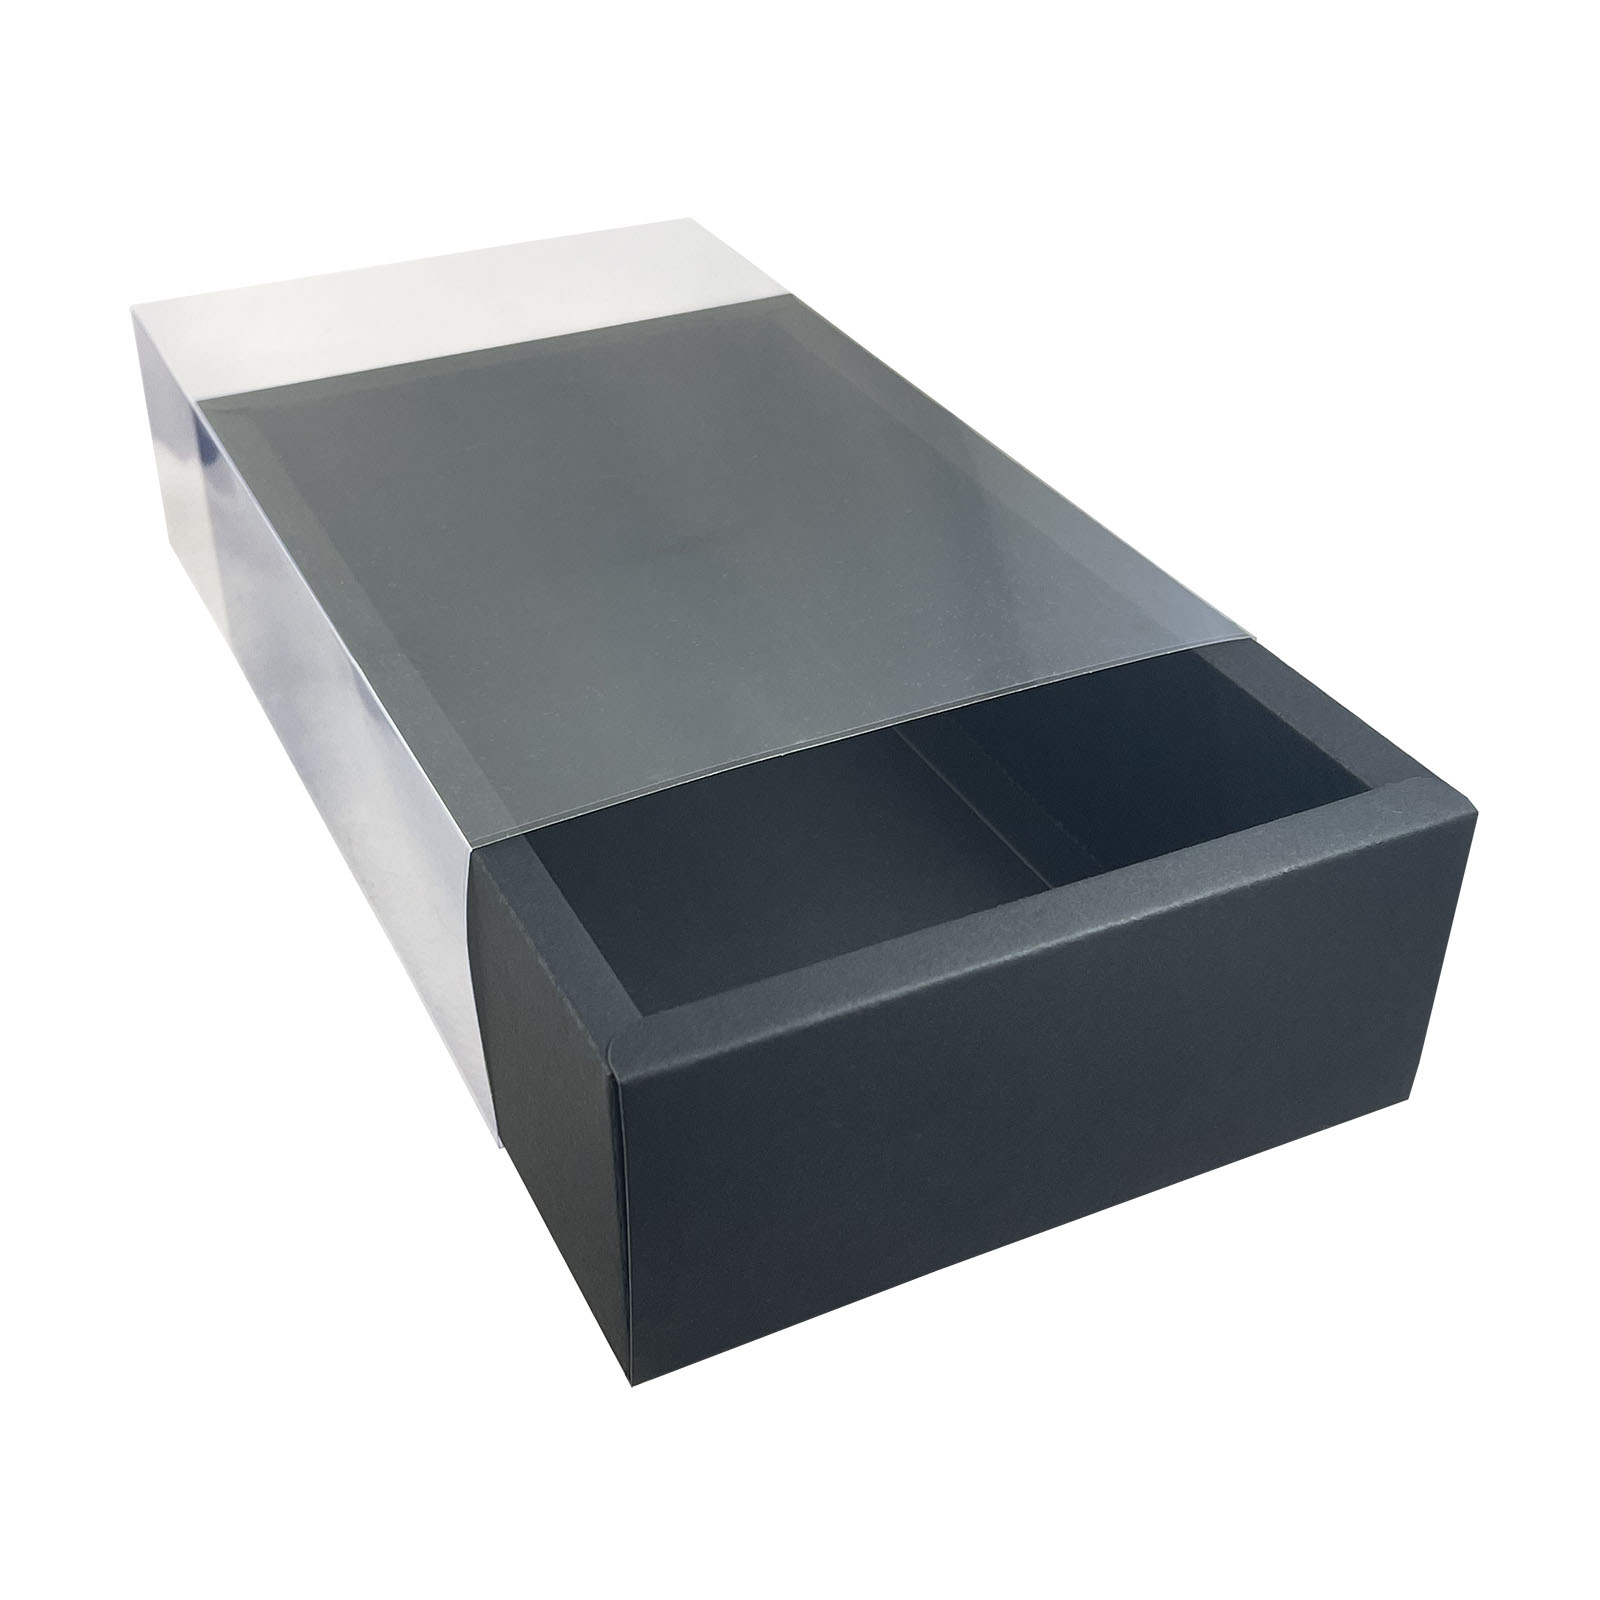 https://denniswisser.com/wp-content/uploads/2022/11/Black-Folding-Paper-Drawer-Boxes.jpg